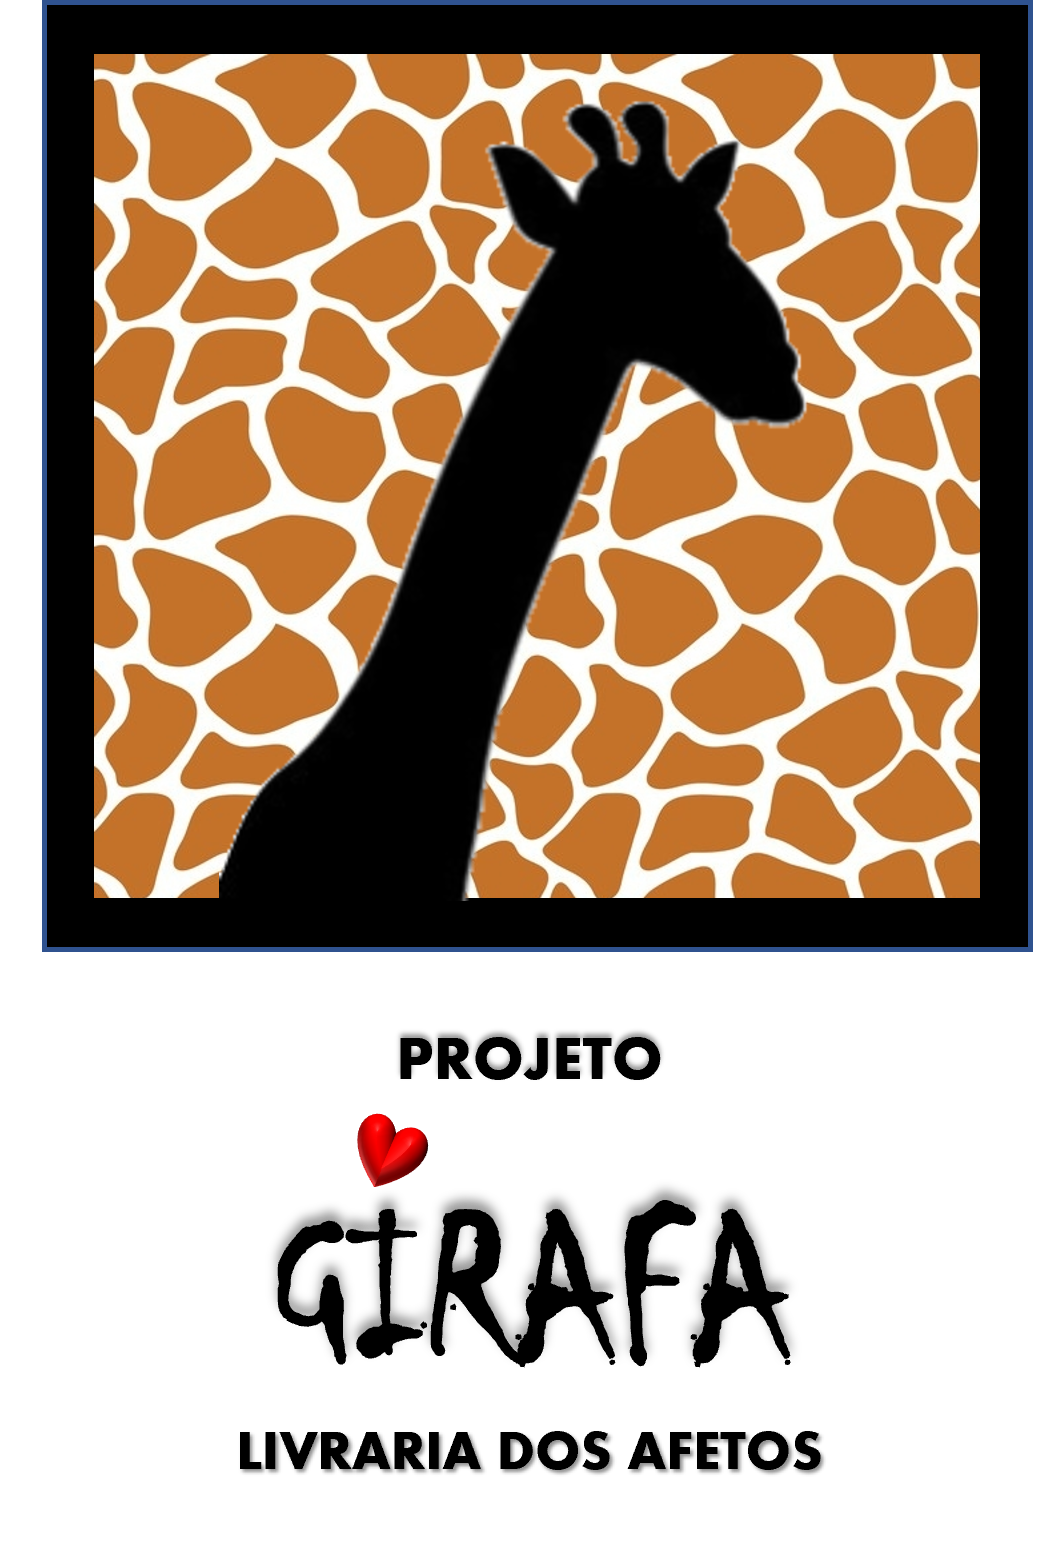 Projeto Girafa - Livraria dos Afetos